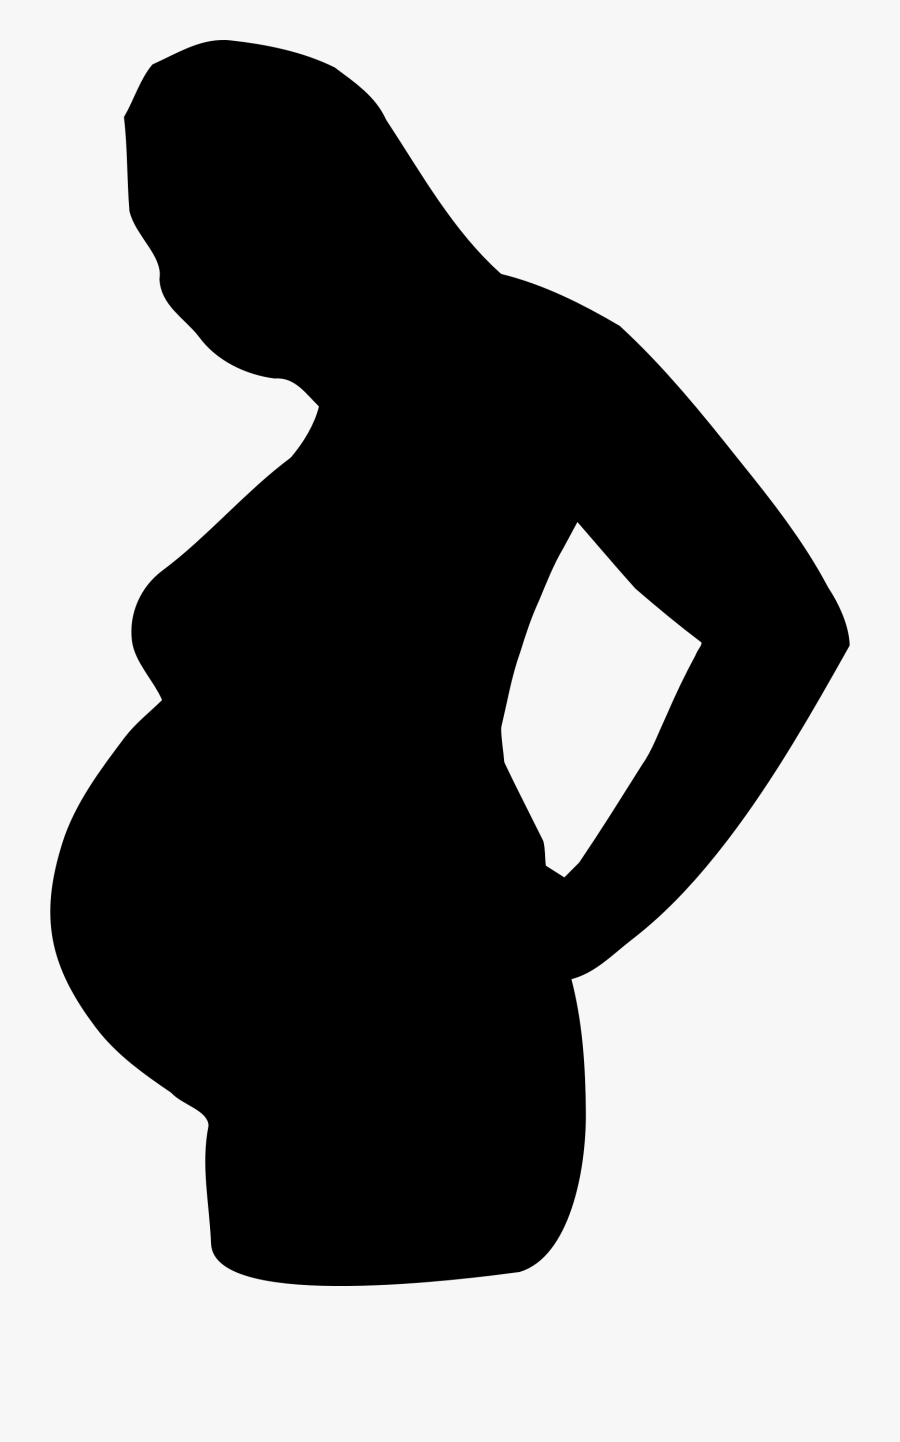 Pregnant Woman Transparent Background, Transparent Clipart